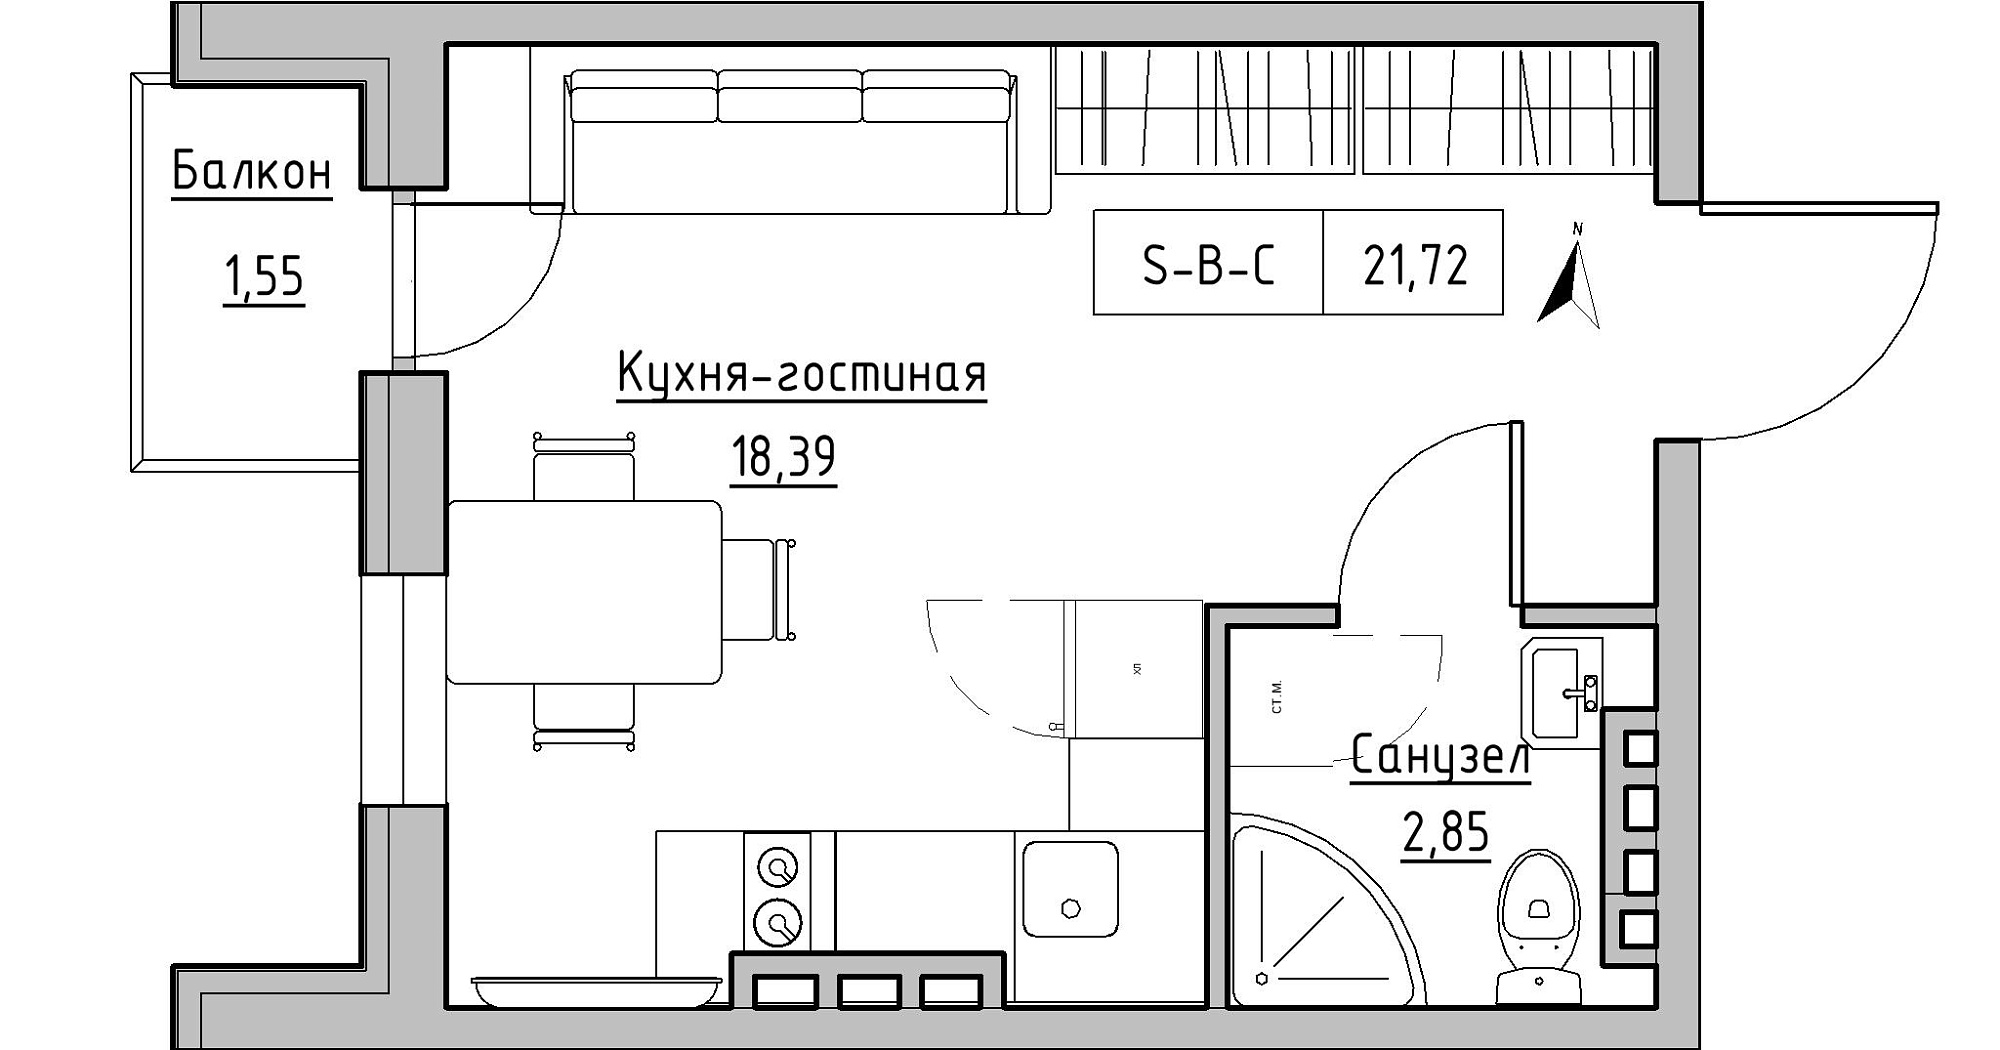 Планування Smart-квартира площею 21.72м2, KS-024-04/0012.